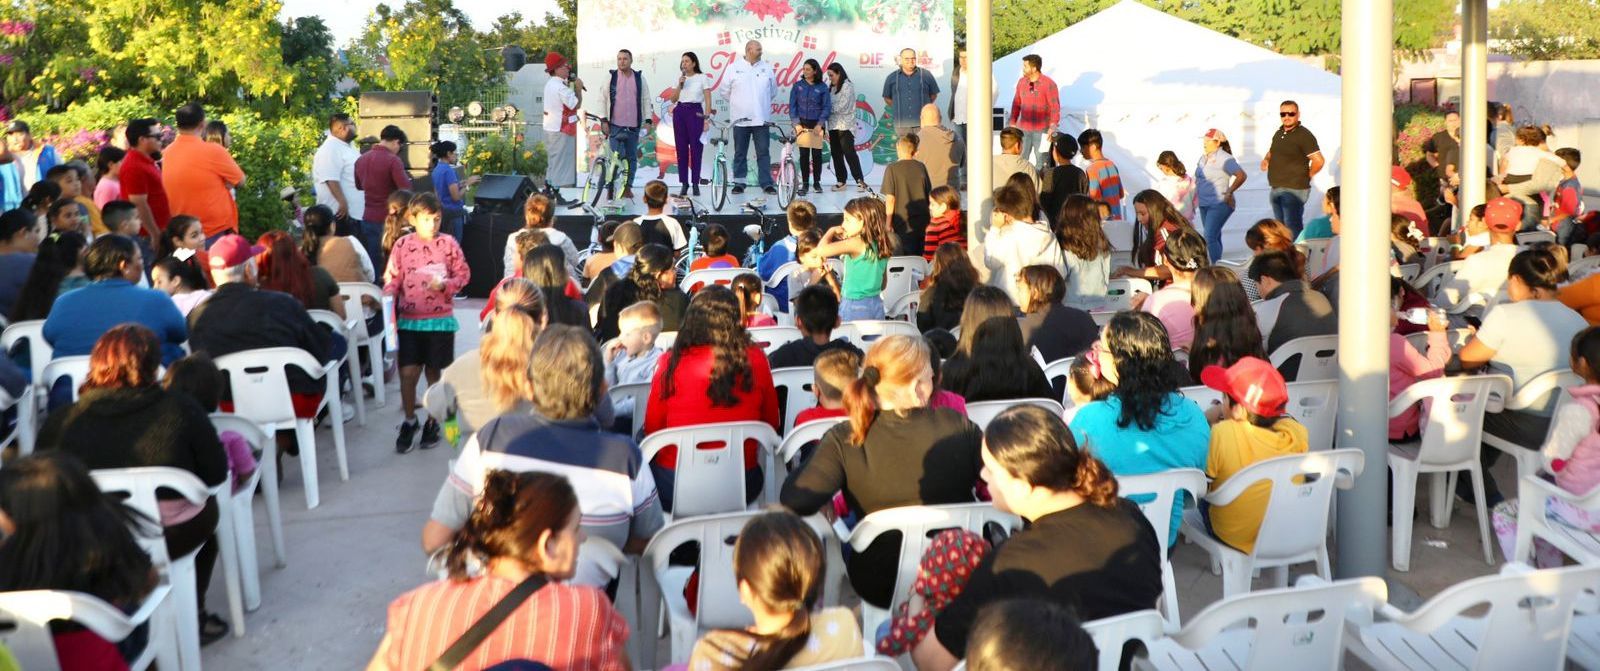 Continúan festivales “Navidad en tu Colonia” en La Paz